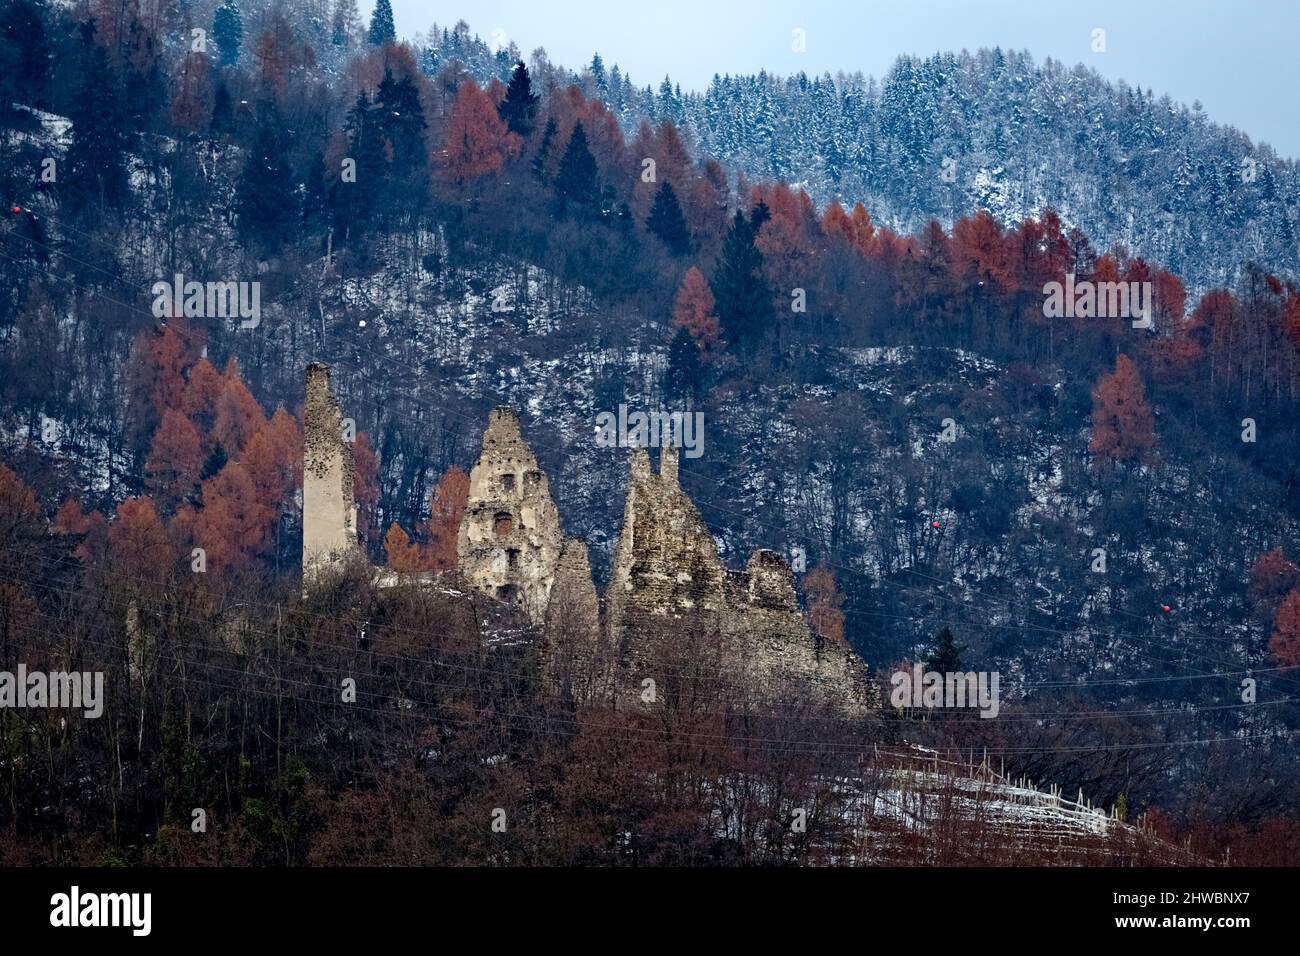 Le rovine medievali del Castello di Selva nei boschi di Levico Terme. Valsugana, provincia di Trento, Trentino Alto Adige, Italia, Europa. Foto Stock